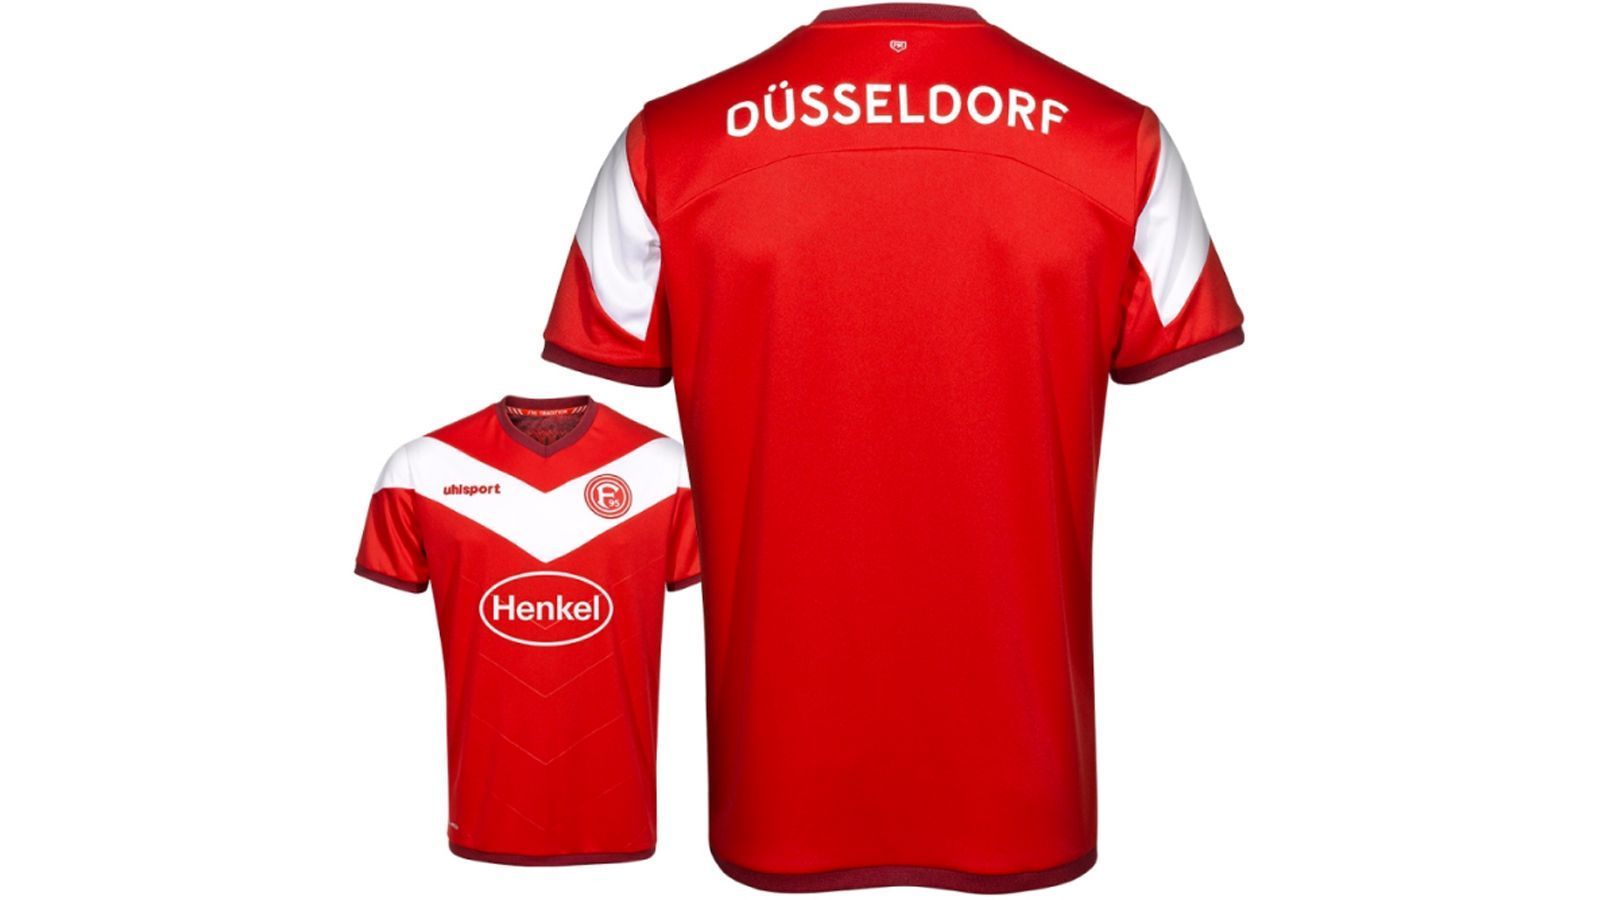 
                <strong>Fortuna Düsseldorf</strong><br>
                Der Aufsteiger aus der Landeshauptstadt Nordrhein-Westfalens trägt taditionell rot und weiß. Neu ist das weiße V auf dem Trikot.
              